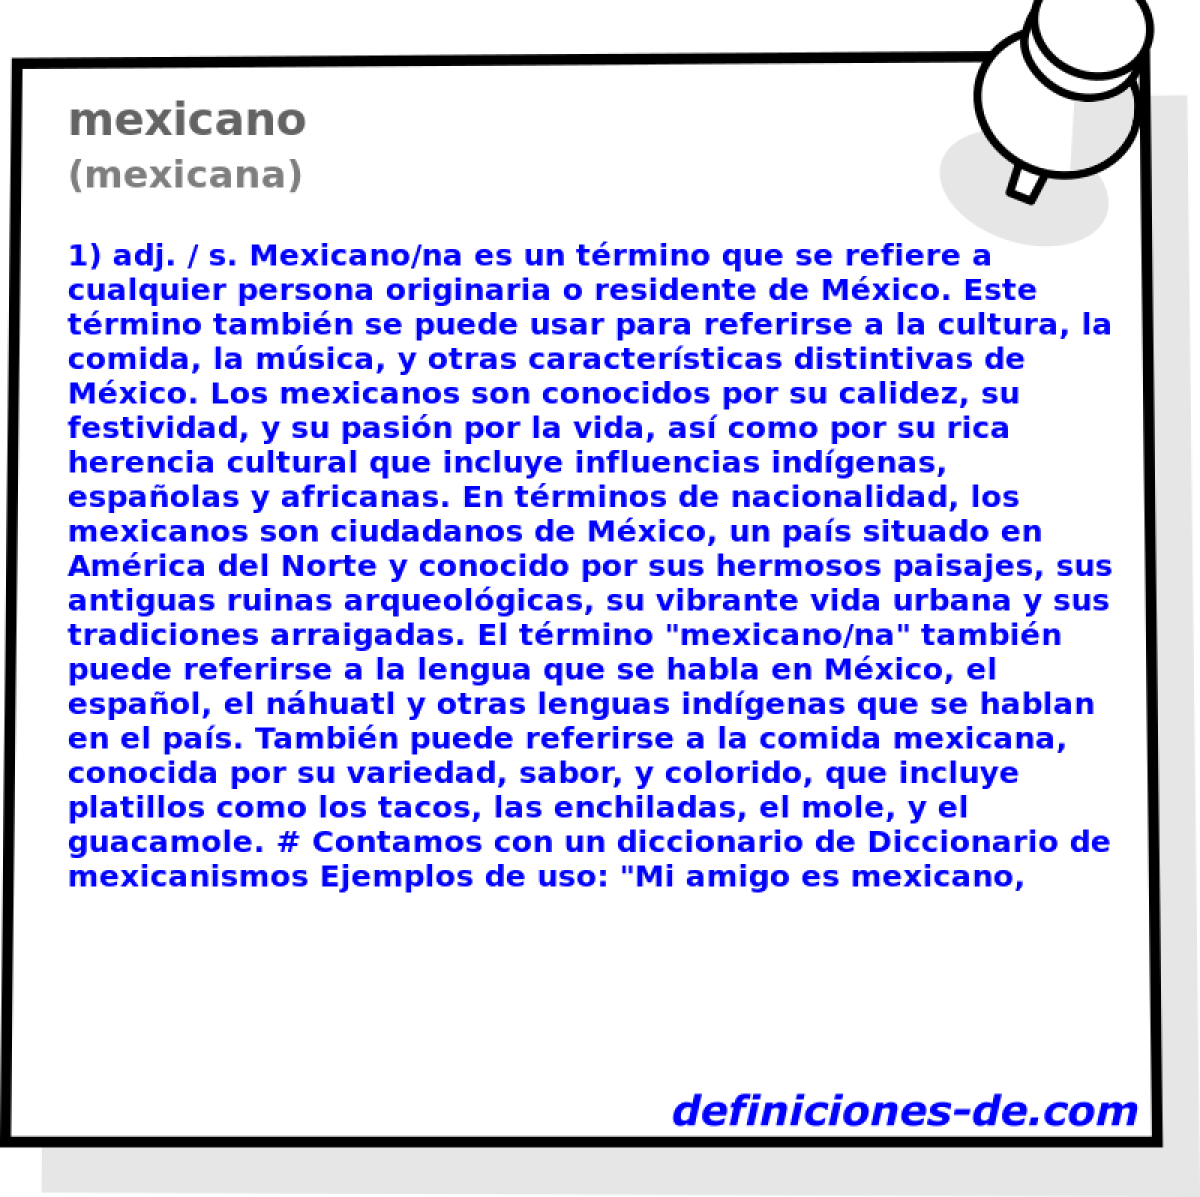 mexicano (mexicana)